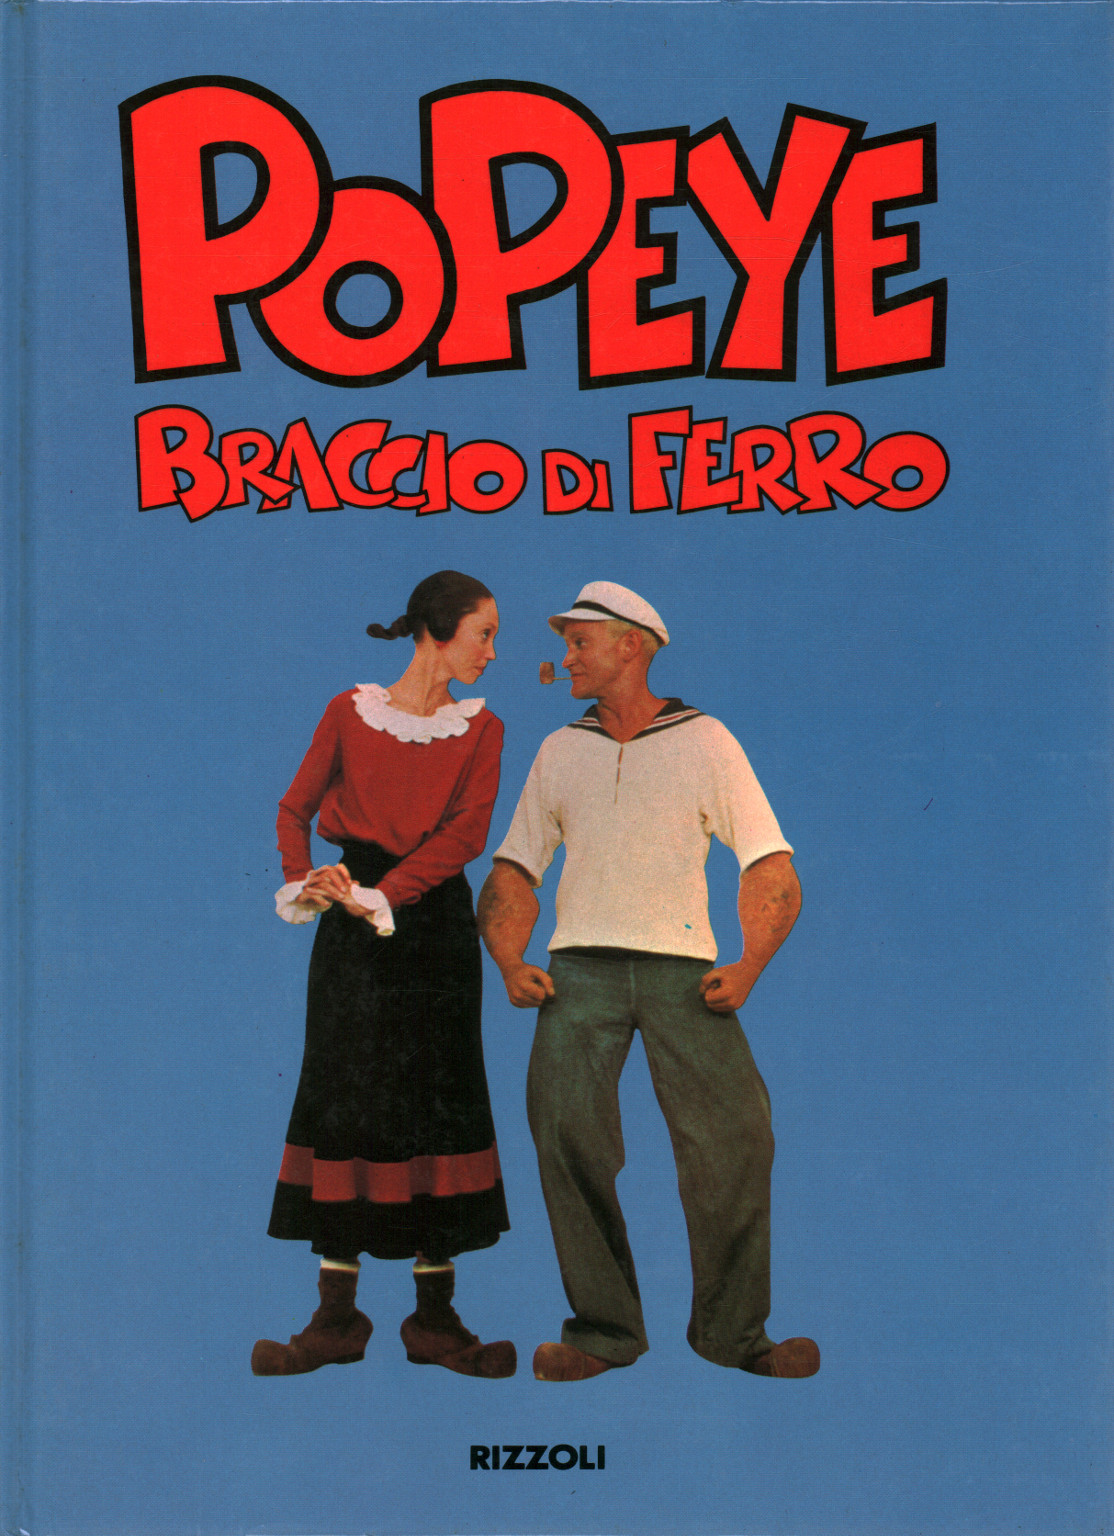 Popeye Braccio di ferro, s.a.,Popeye - Braccio di ferro